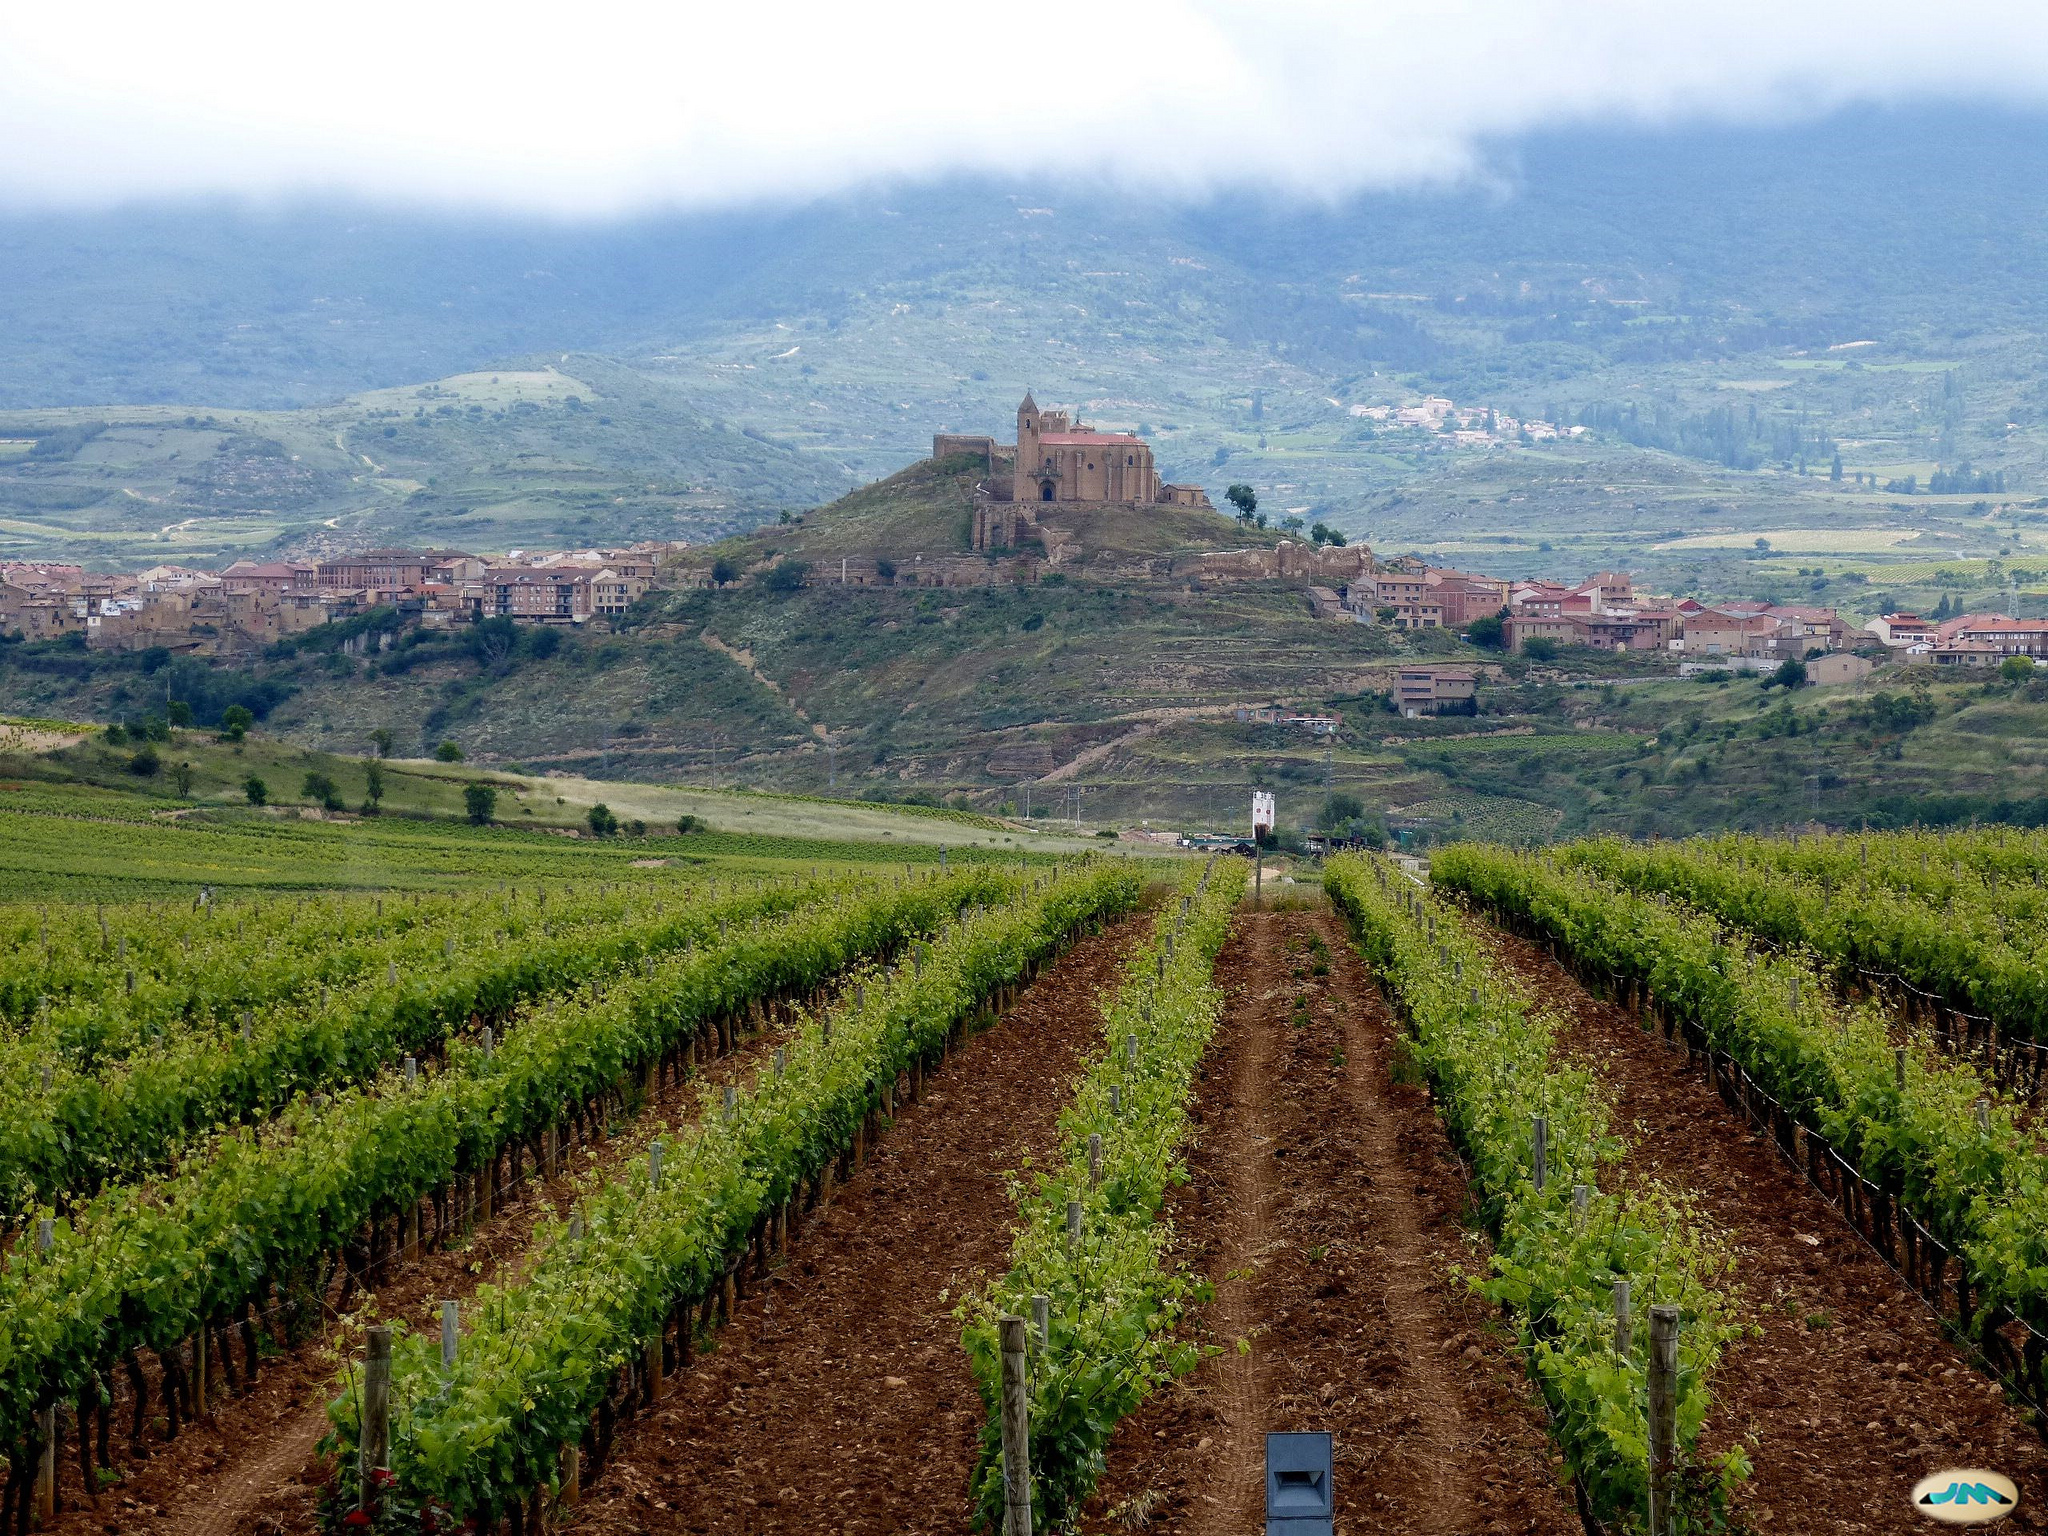 Viñedo riojano con el pueblo de Briones al fondo (fotografía cedida en Flickr por Juantigues bajo las siguientes condiciones)